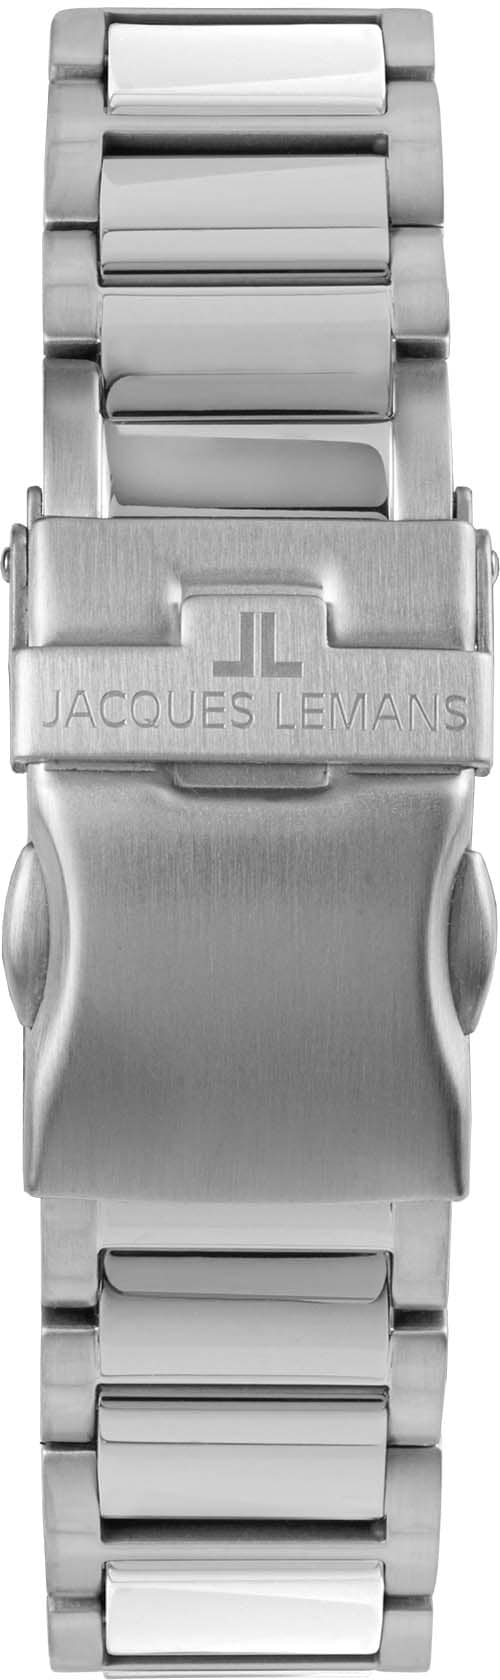 Jacques Lemans Keramikuhr »Liverpool, 42-12J«, Quarzuhr, Armbanduhr, Damenuhr, Datum, Leuchtzeiger